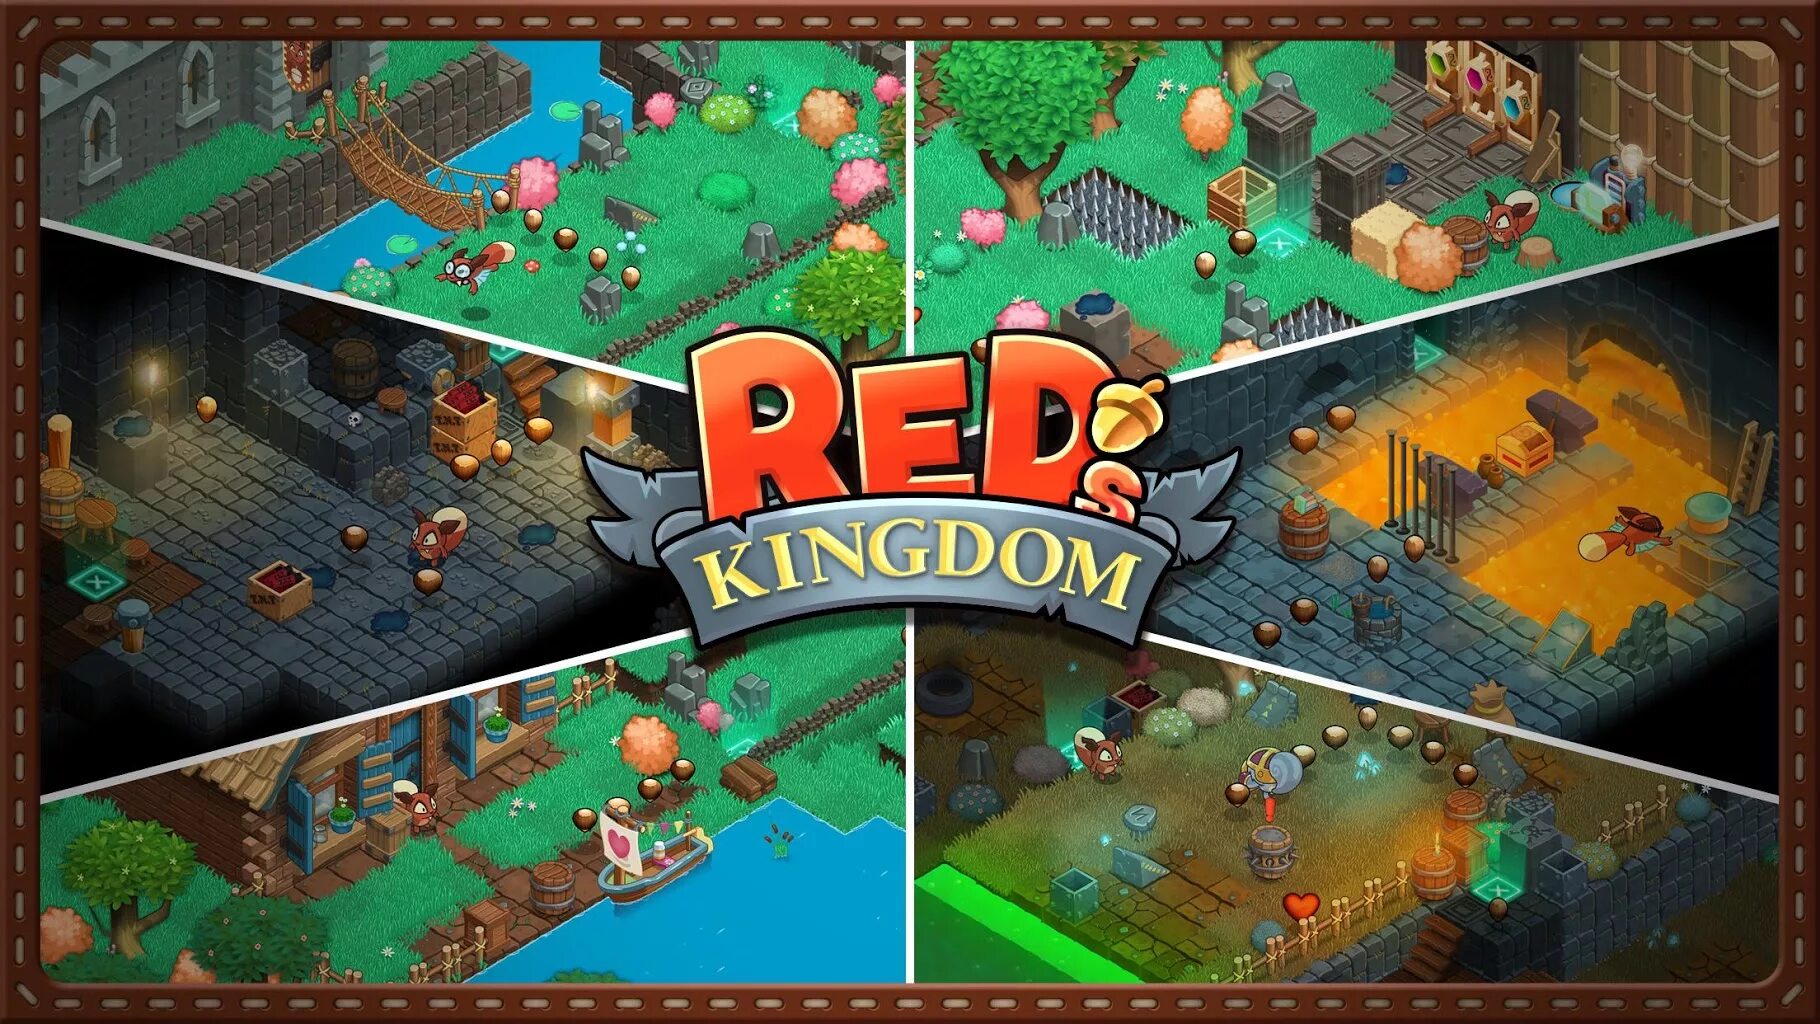 Где рыжий kingdom. Красное королевство игра. Red's Kingdom. Игра красные синие королевство. Kingdom Red members.